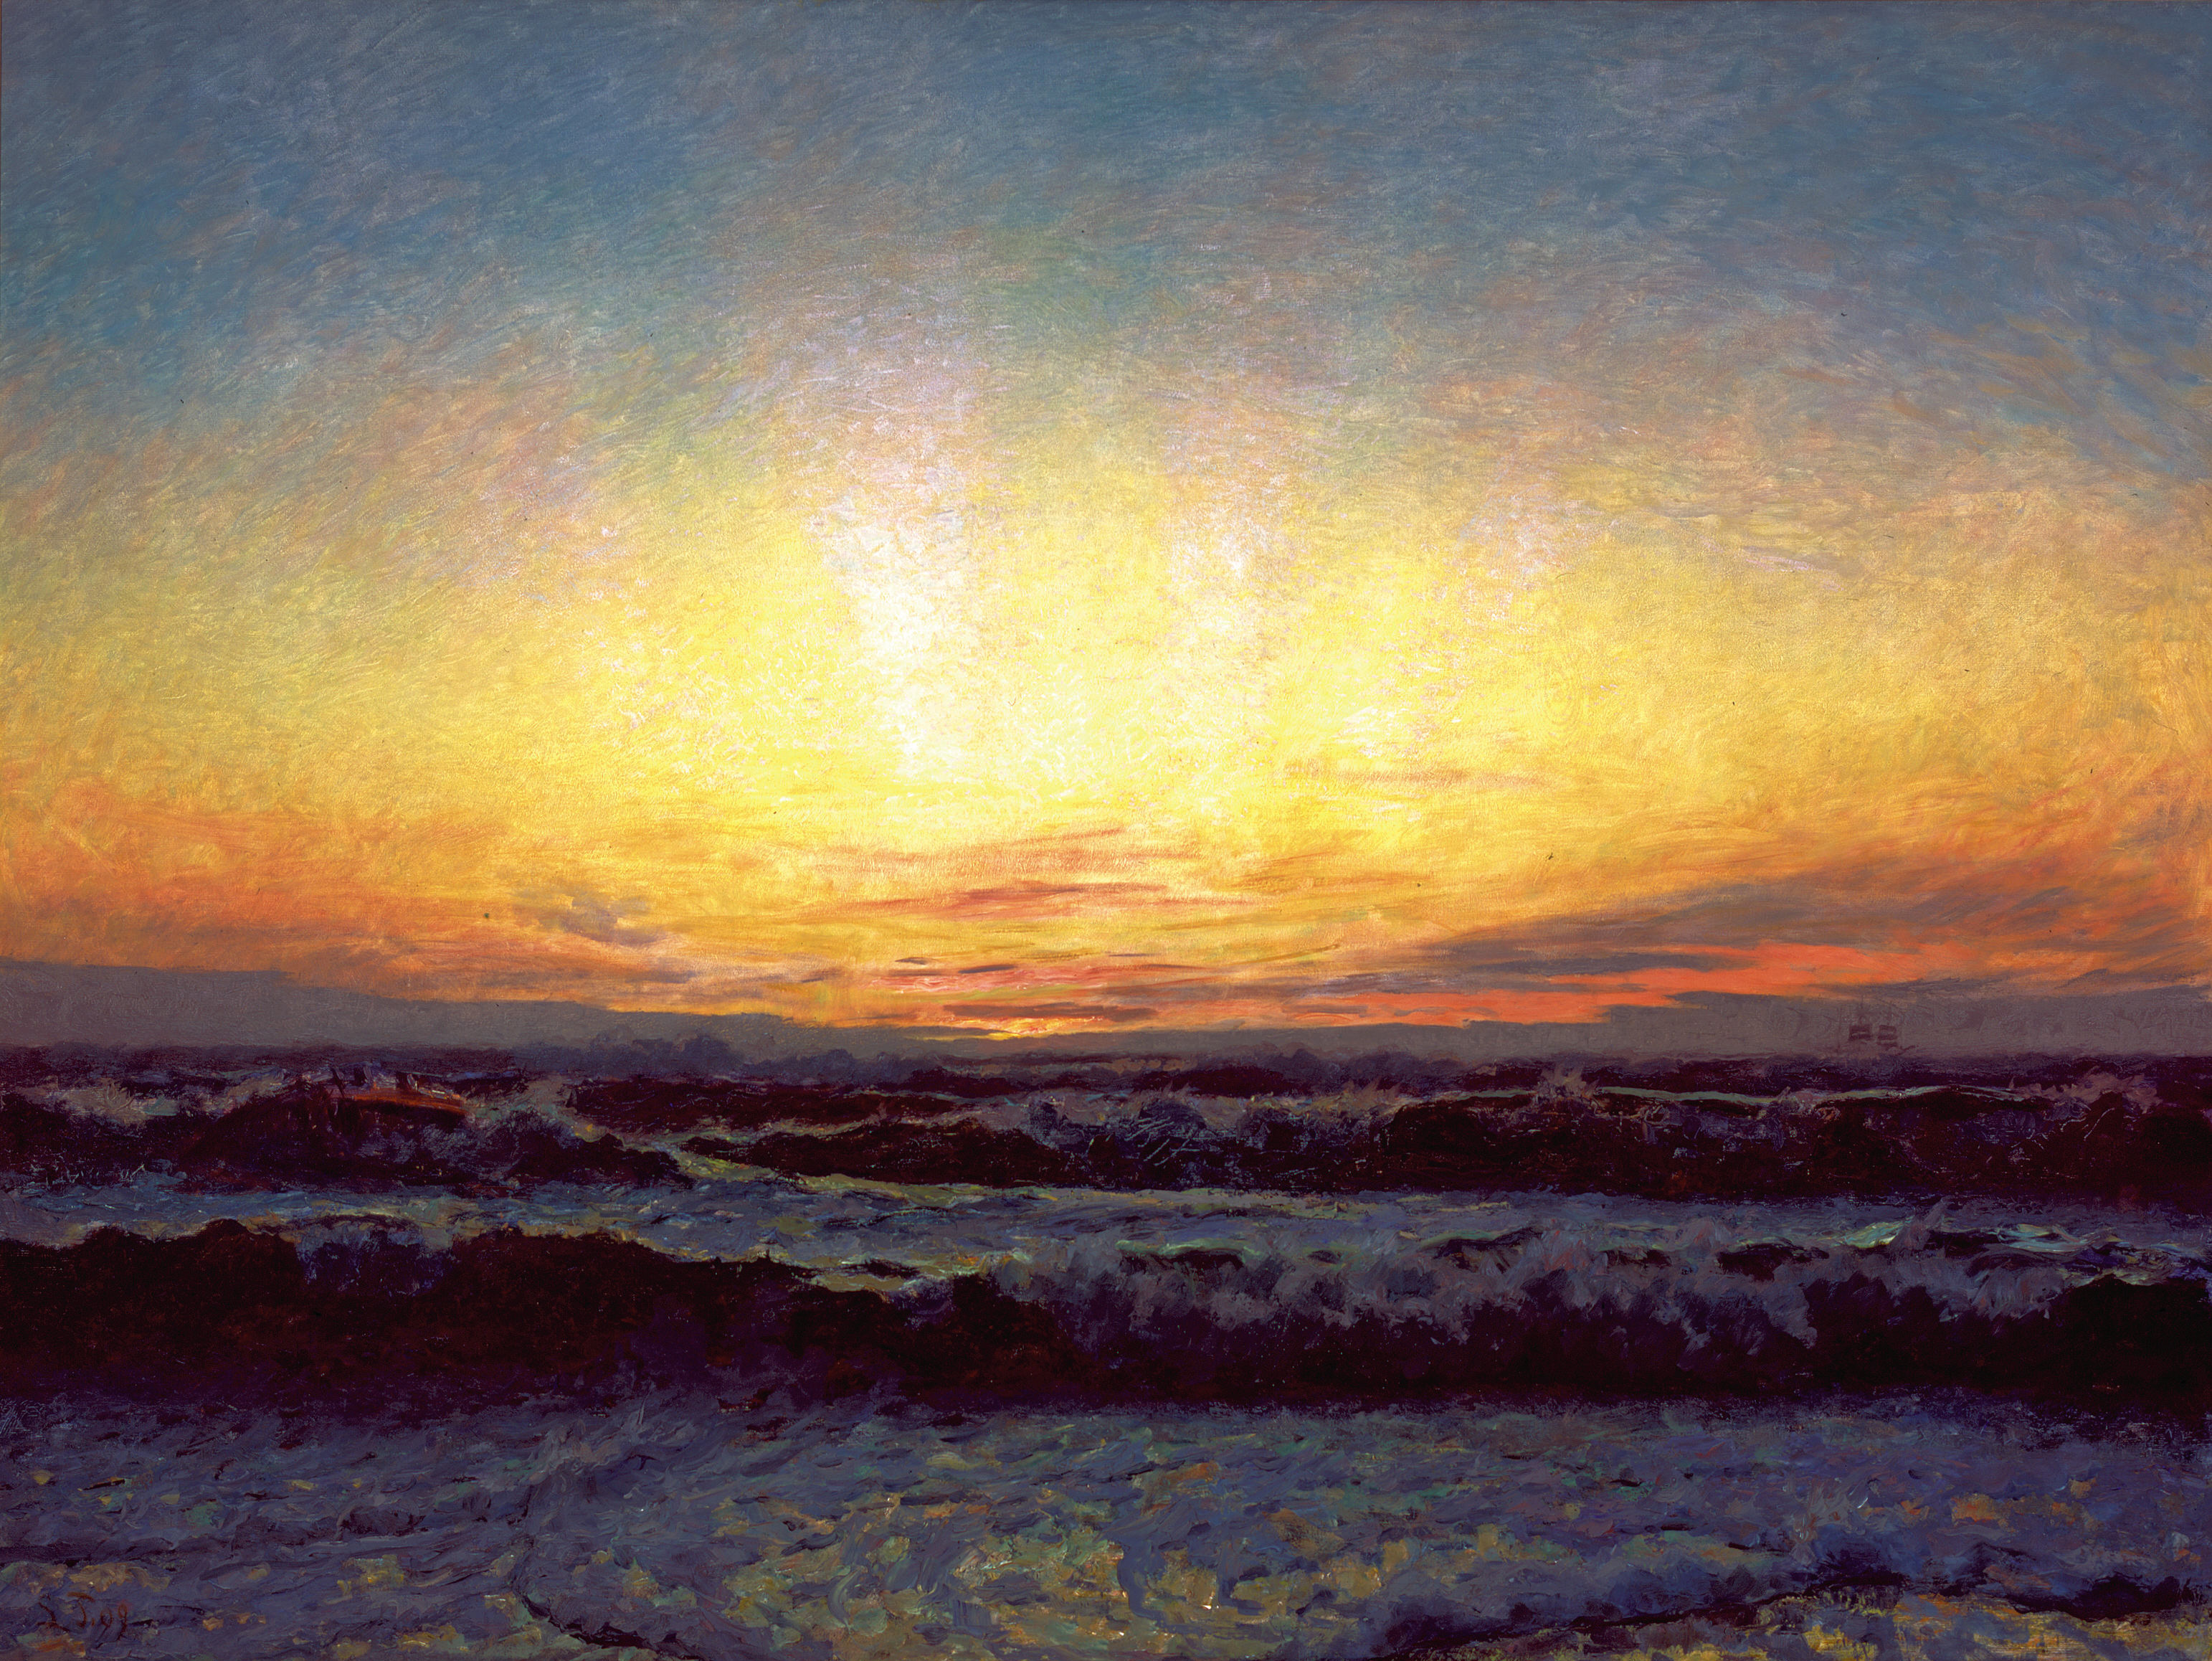 北海的暴风雨天气。日落之后。Højen by 劳里茨 · 图克森 - 1909 - 216 x 274 cm 